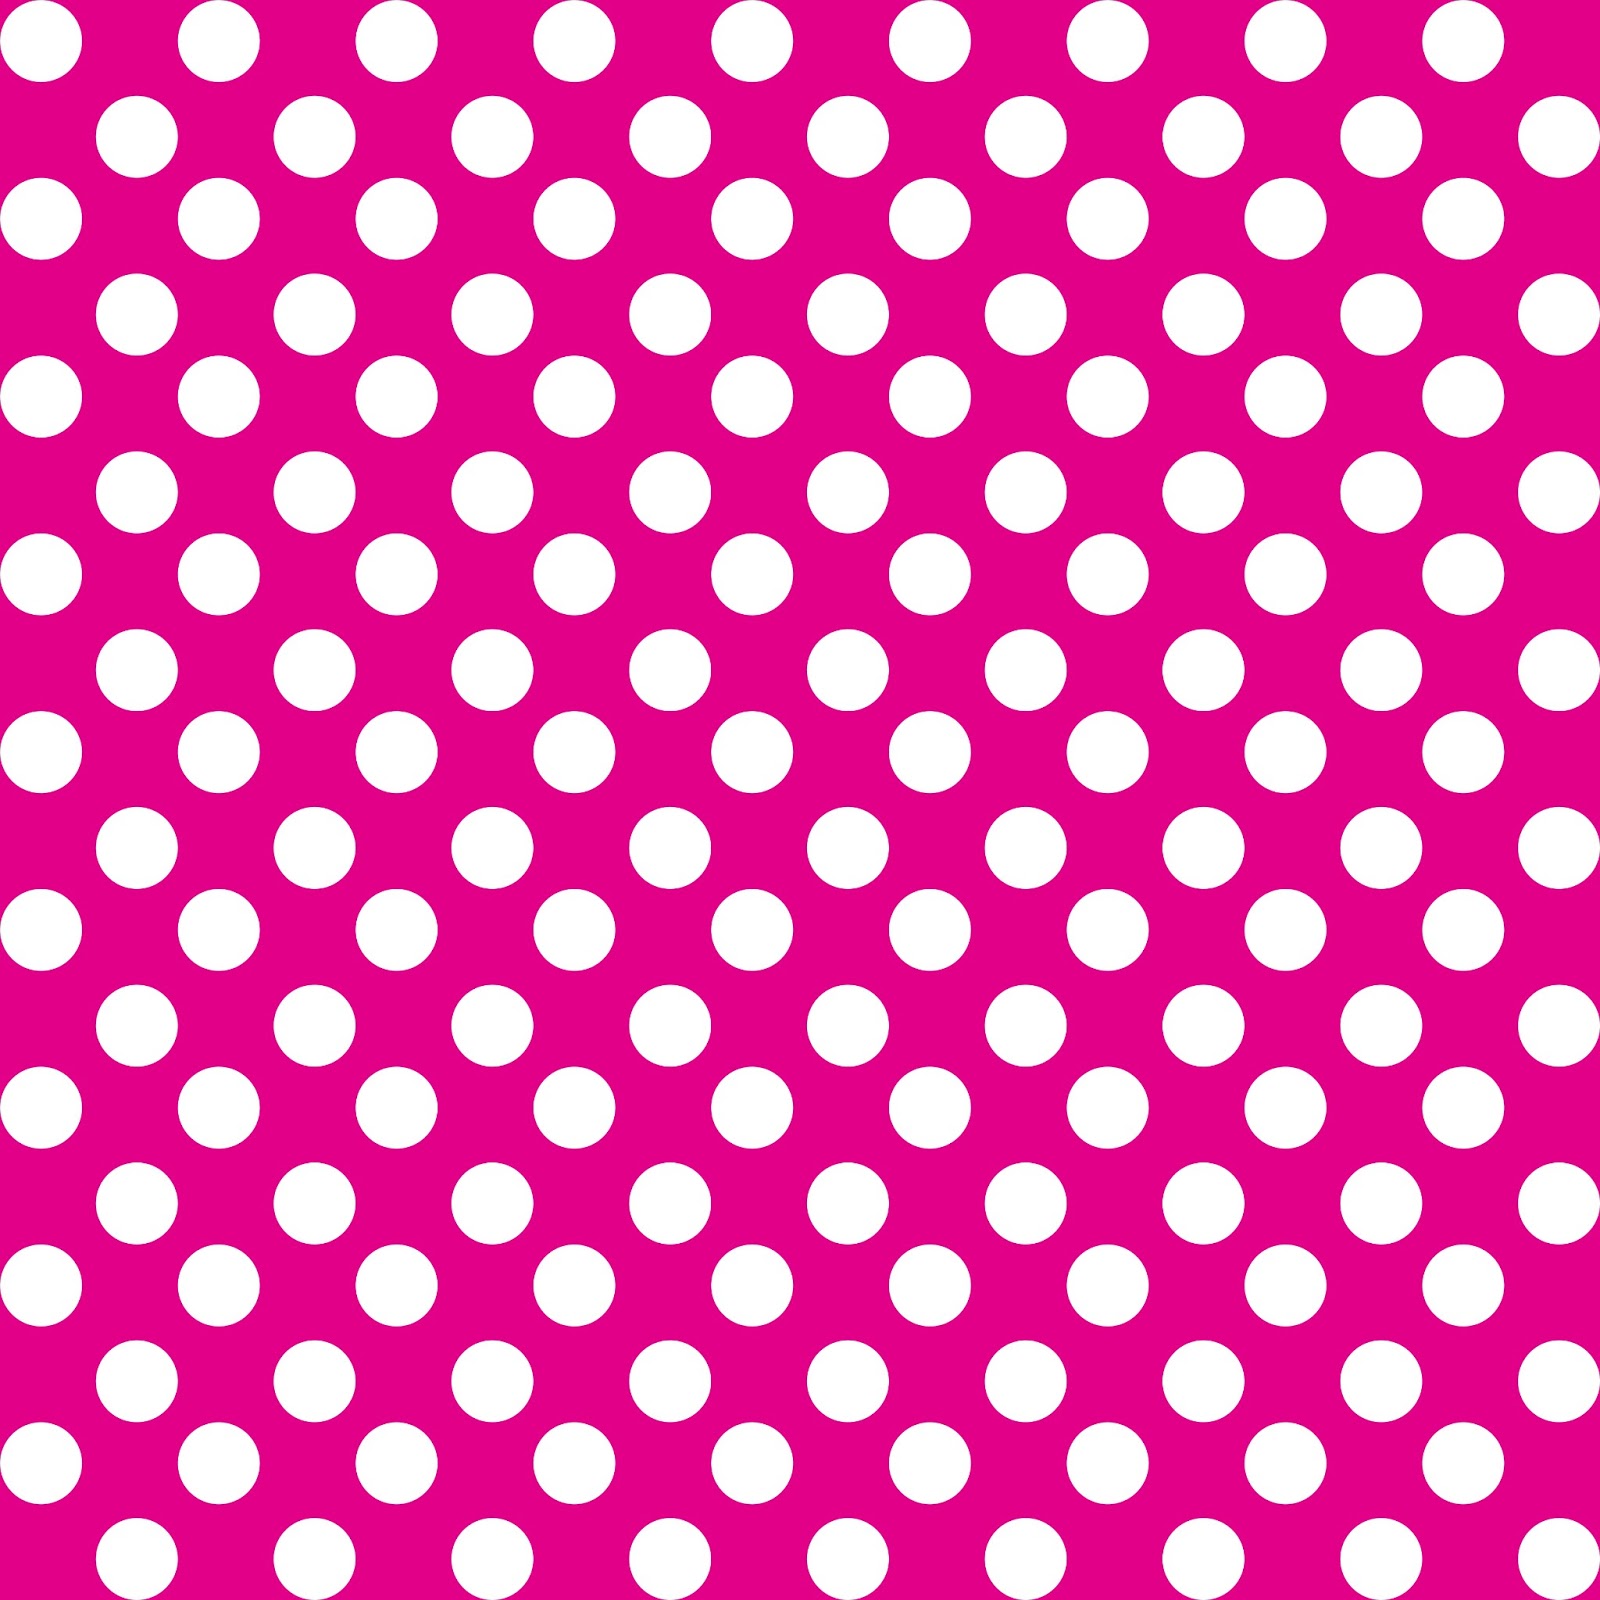 February 2013 ~ J. Design - Polka Dot Clipart